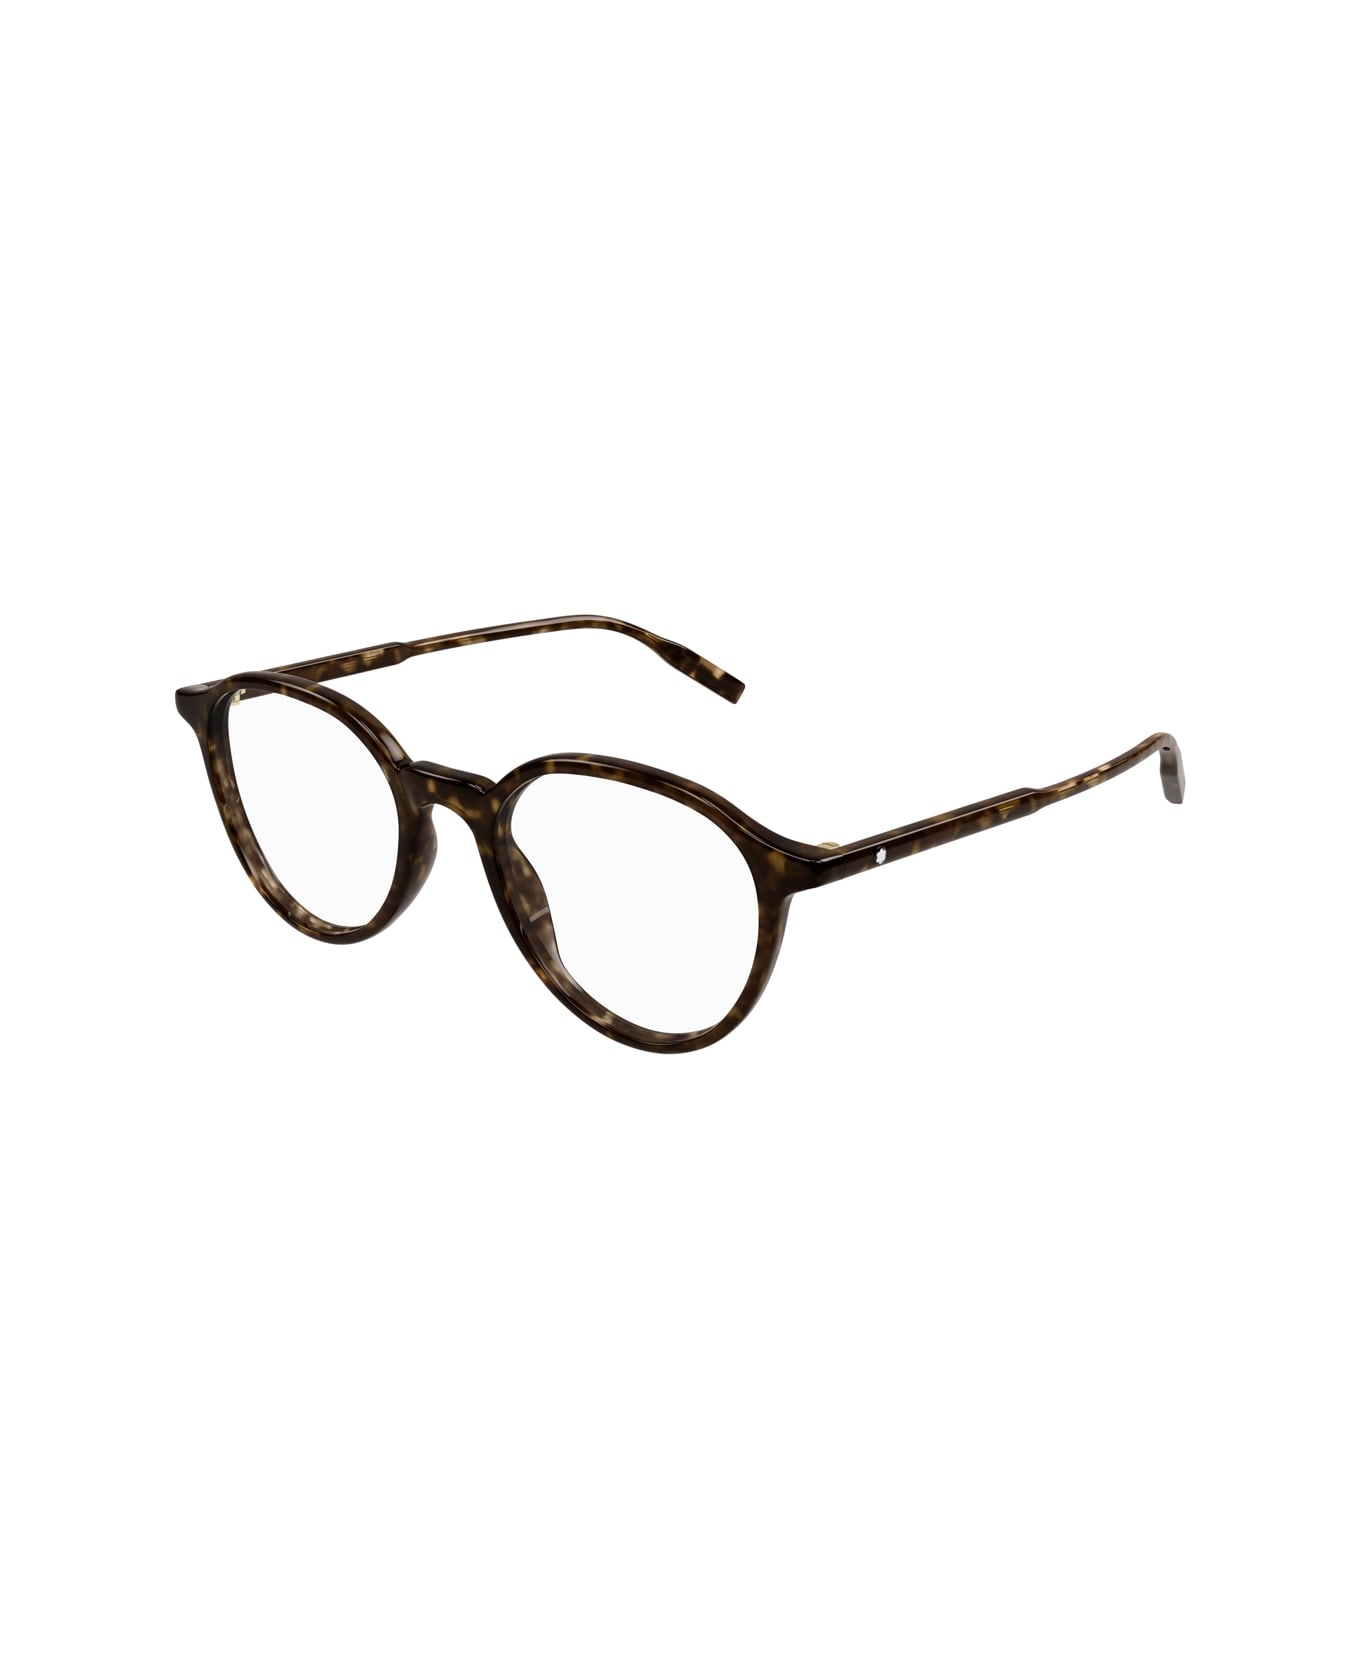 Montblanc Mb0291o 002 Glasses - Marrone アイウェア